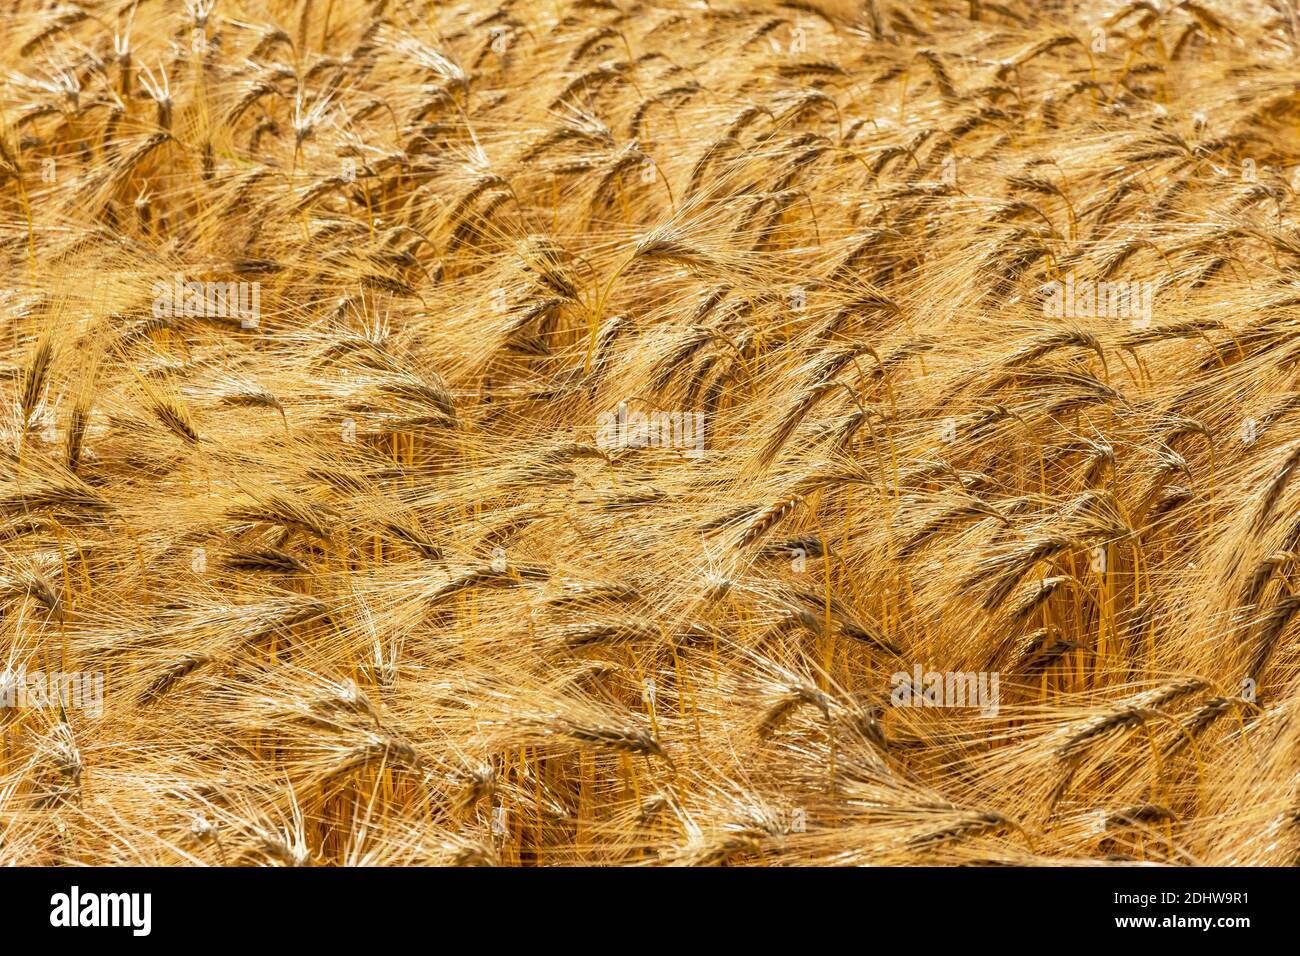 Ein Getreidefeld mit Gerste wartet auf die Ernte. Symbolfoto für Landwirtschaft und gesunde Ernährung. Banque D'Images